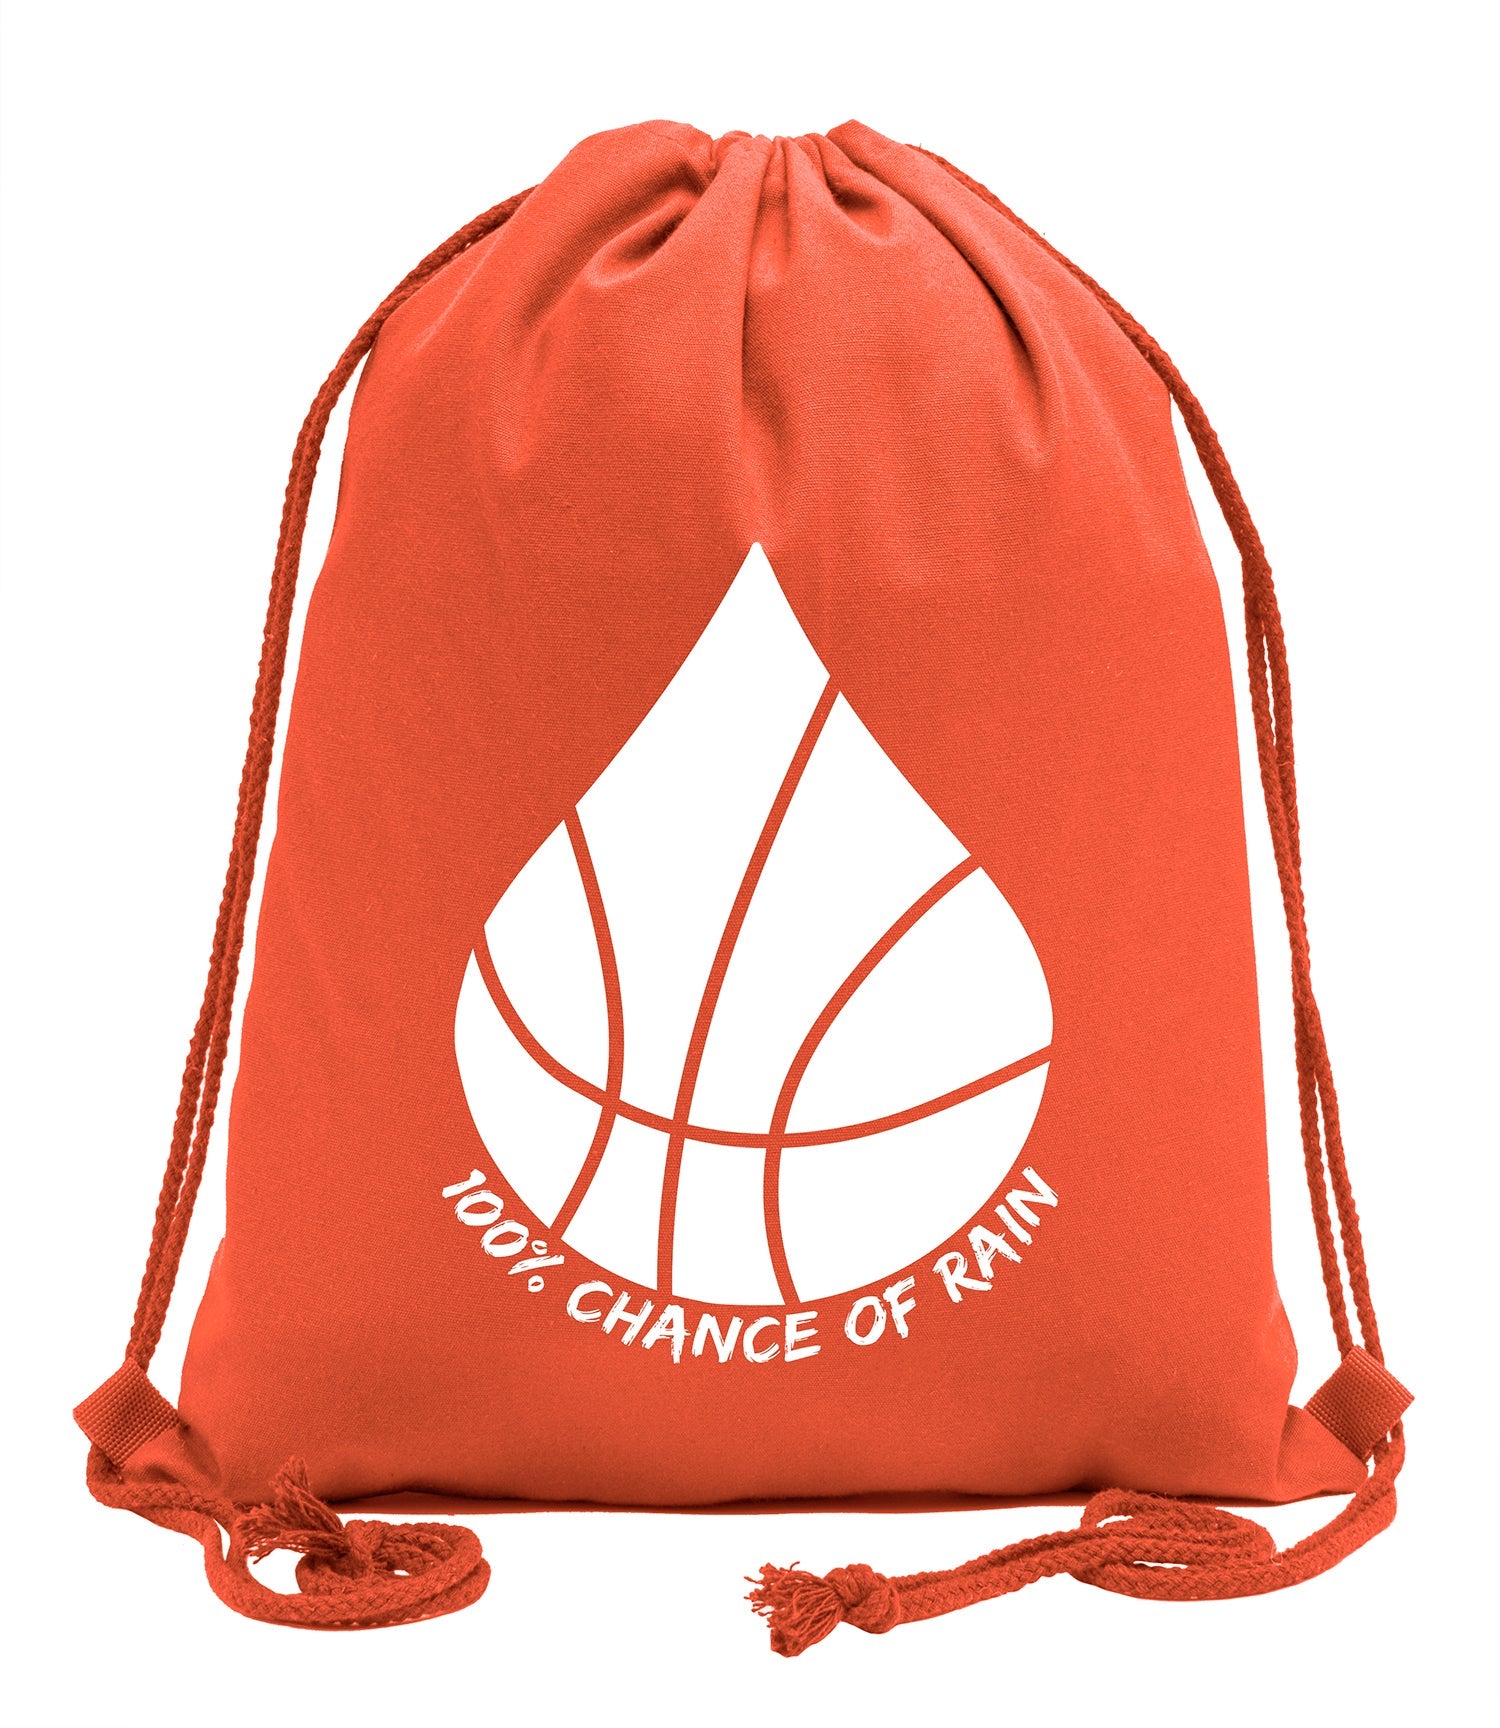 100% Chance of Rain Basketball Cotton Drawstring Bag